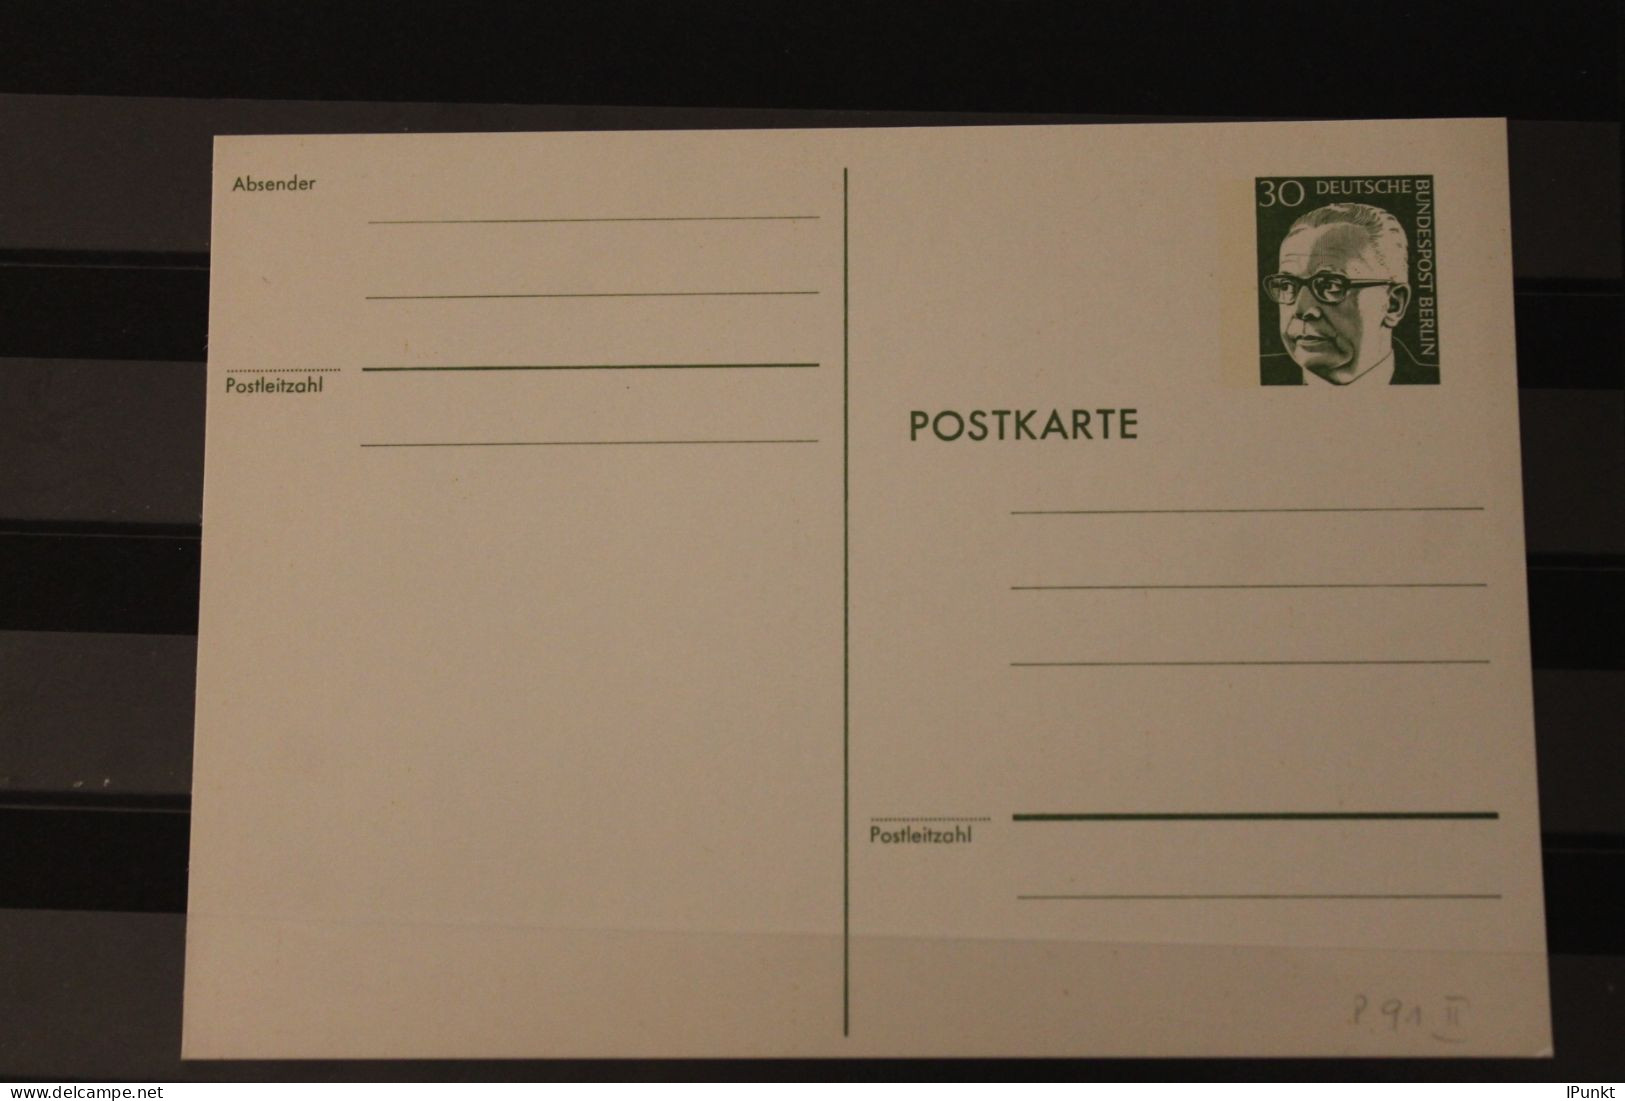 Berlin 1973; Ganzsache G. Heinemann Postkarte   P 91 II; Ungebraucht - Postkarten - Ungebraucht